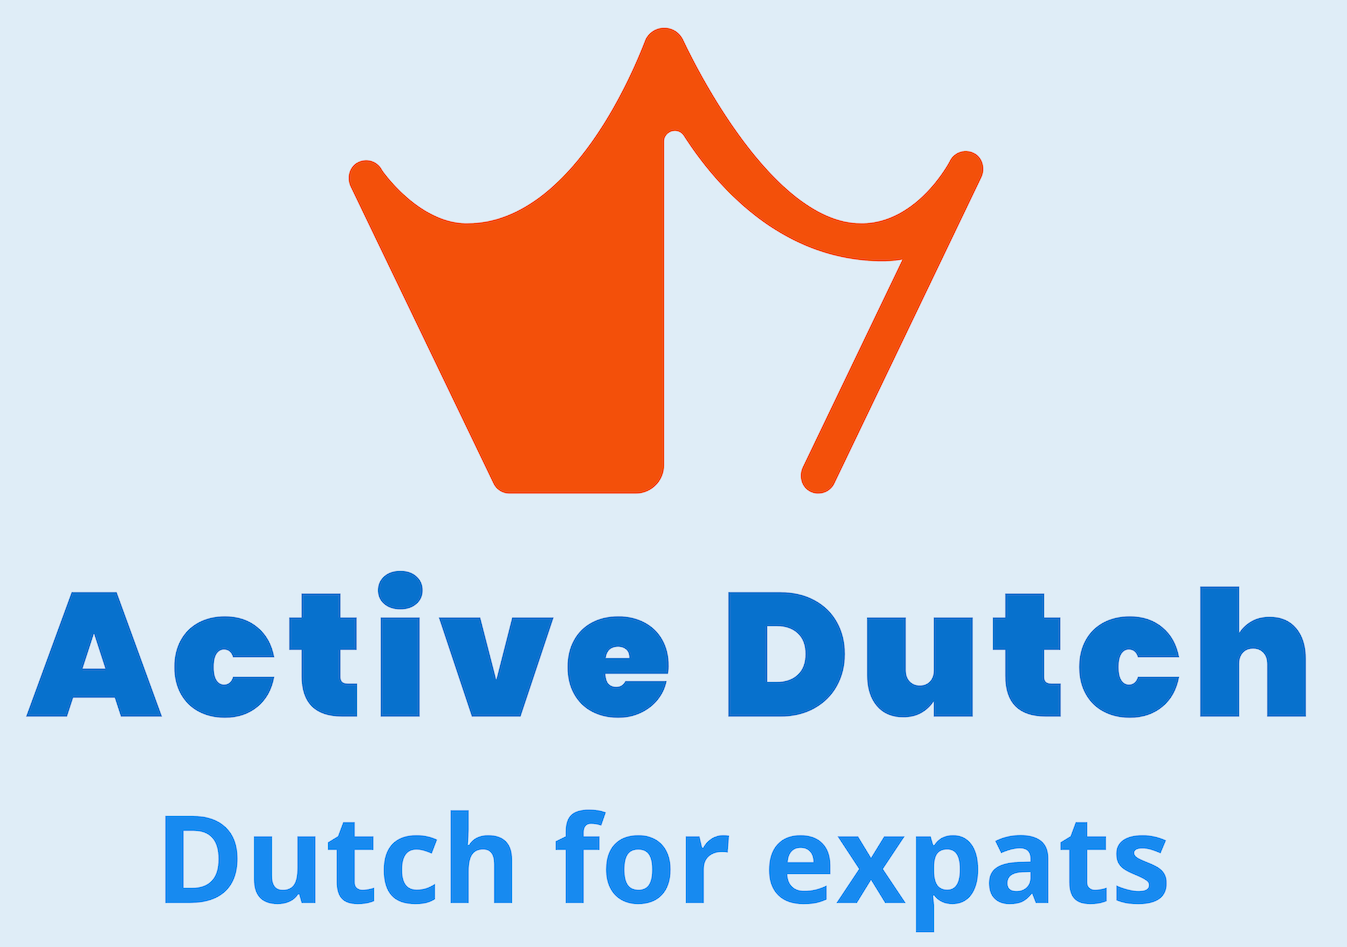 Dutch for expats - Active Dutch